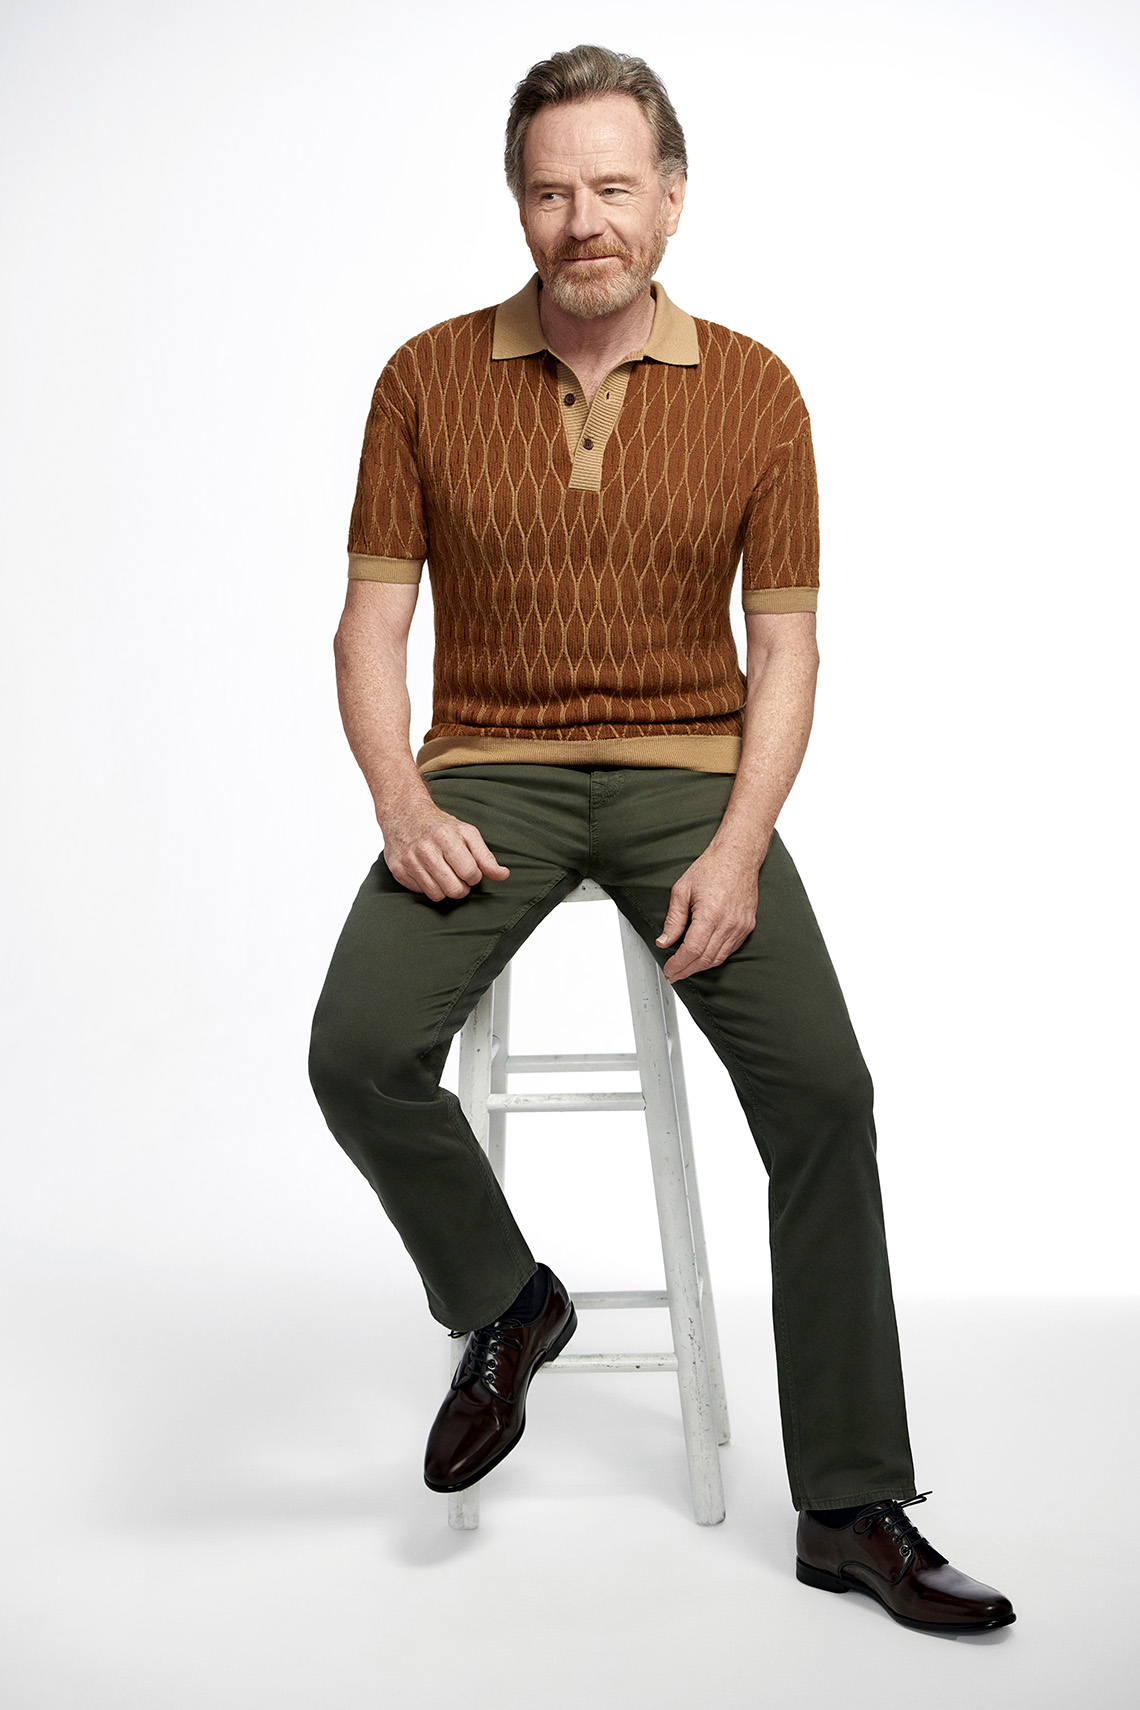 El actor Bryan Cranston sentado en un taburete.